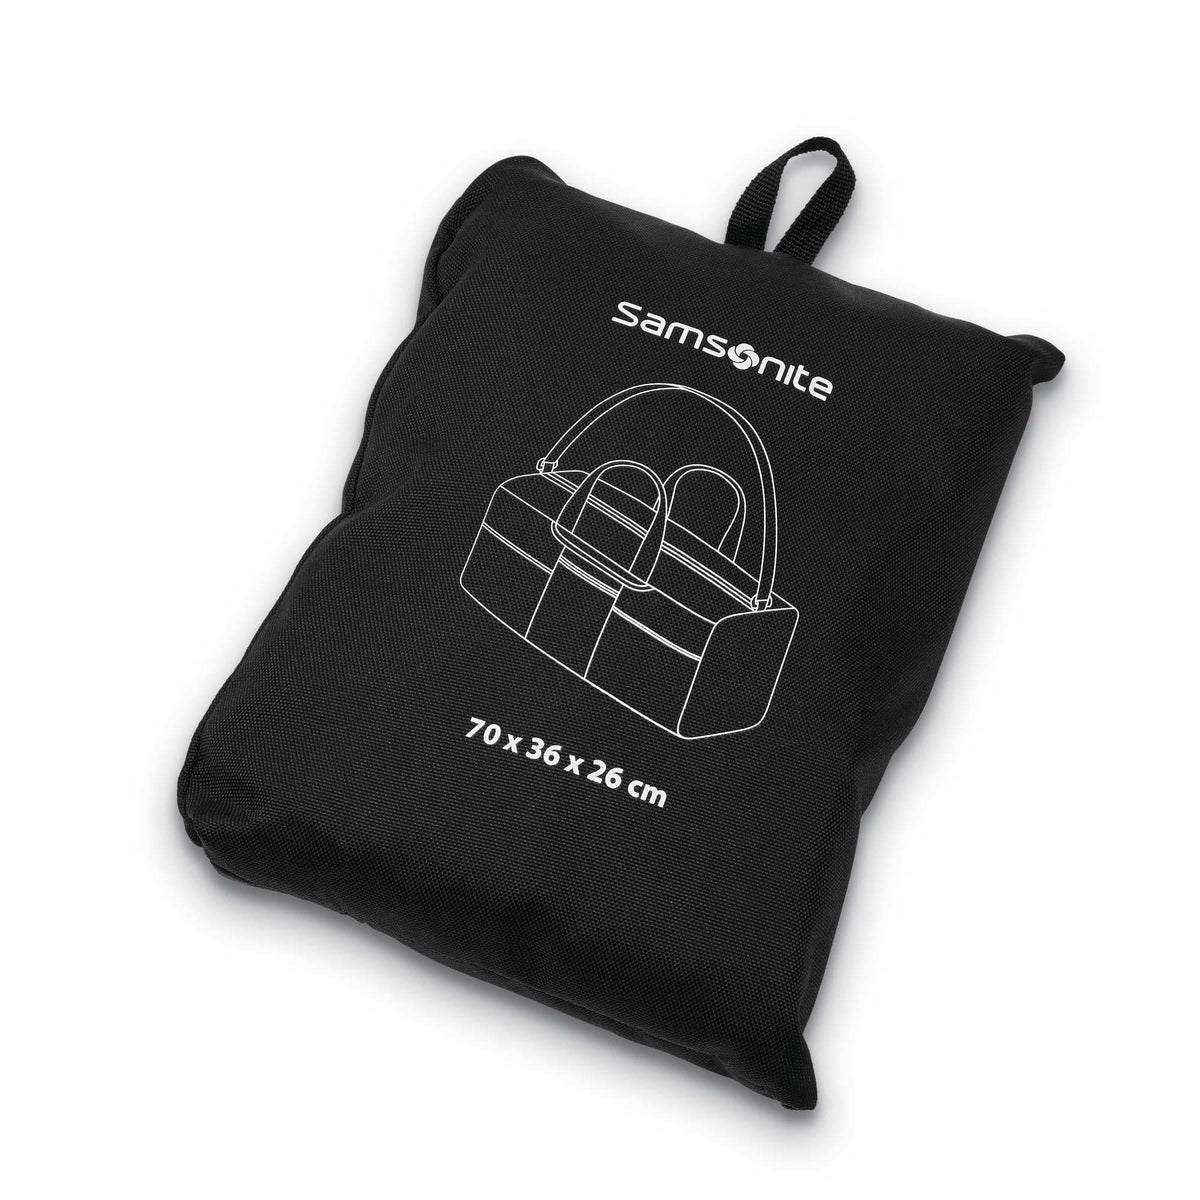 Samsonite Foldaway Packable Duffle Bag